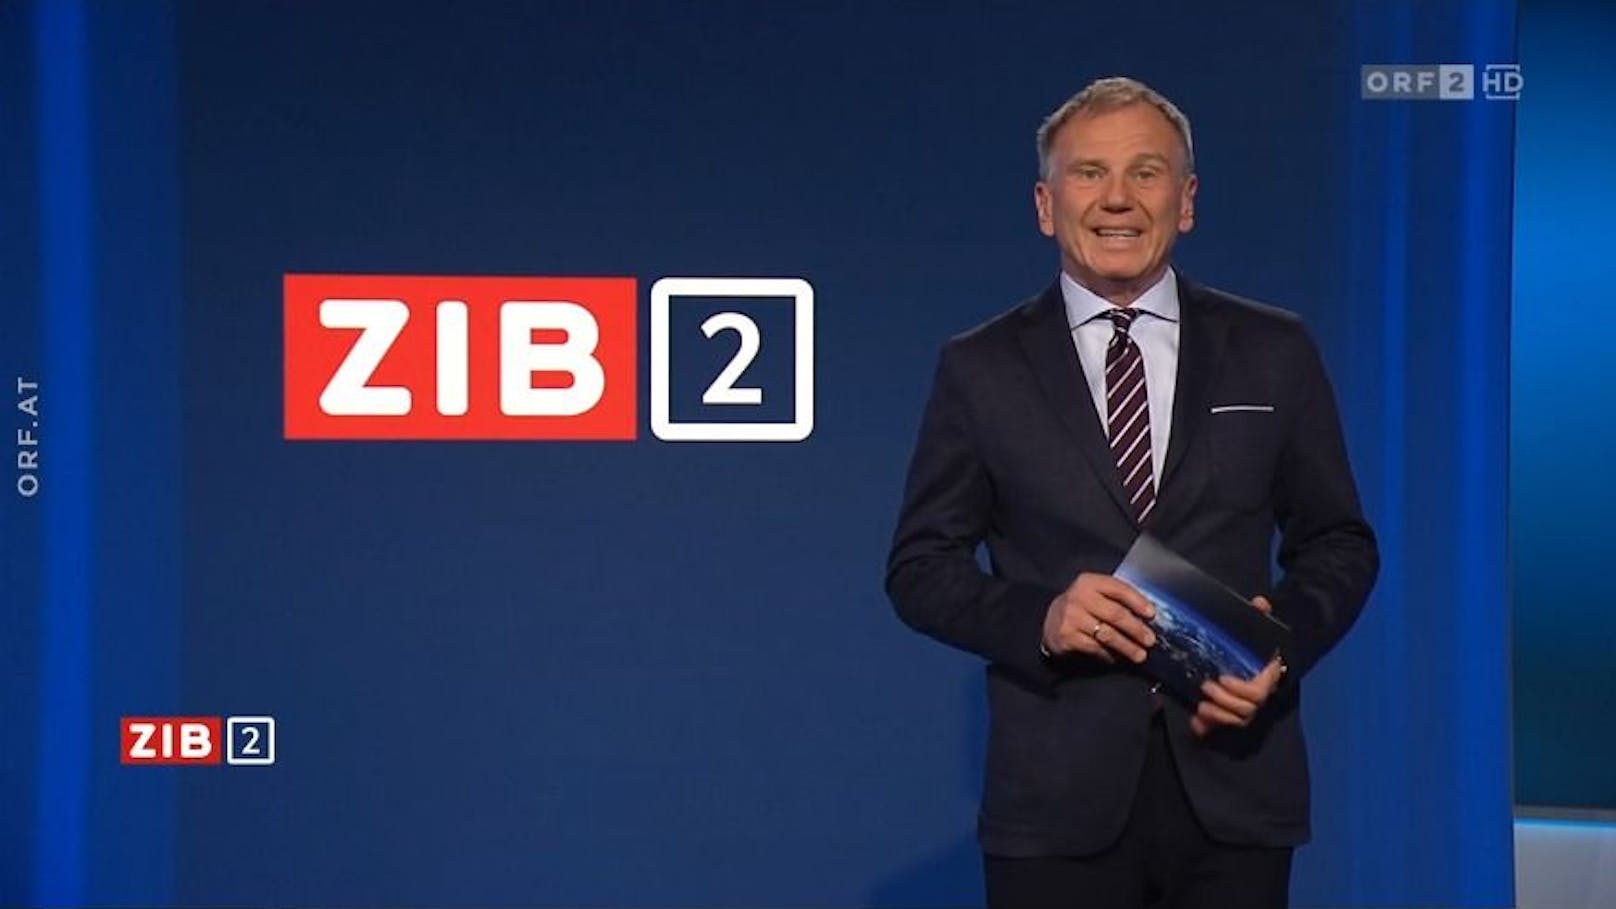 ORF-Panne bei Armin Wolf, riesiger Ausfall in "ZIB2"